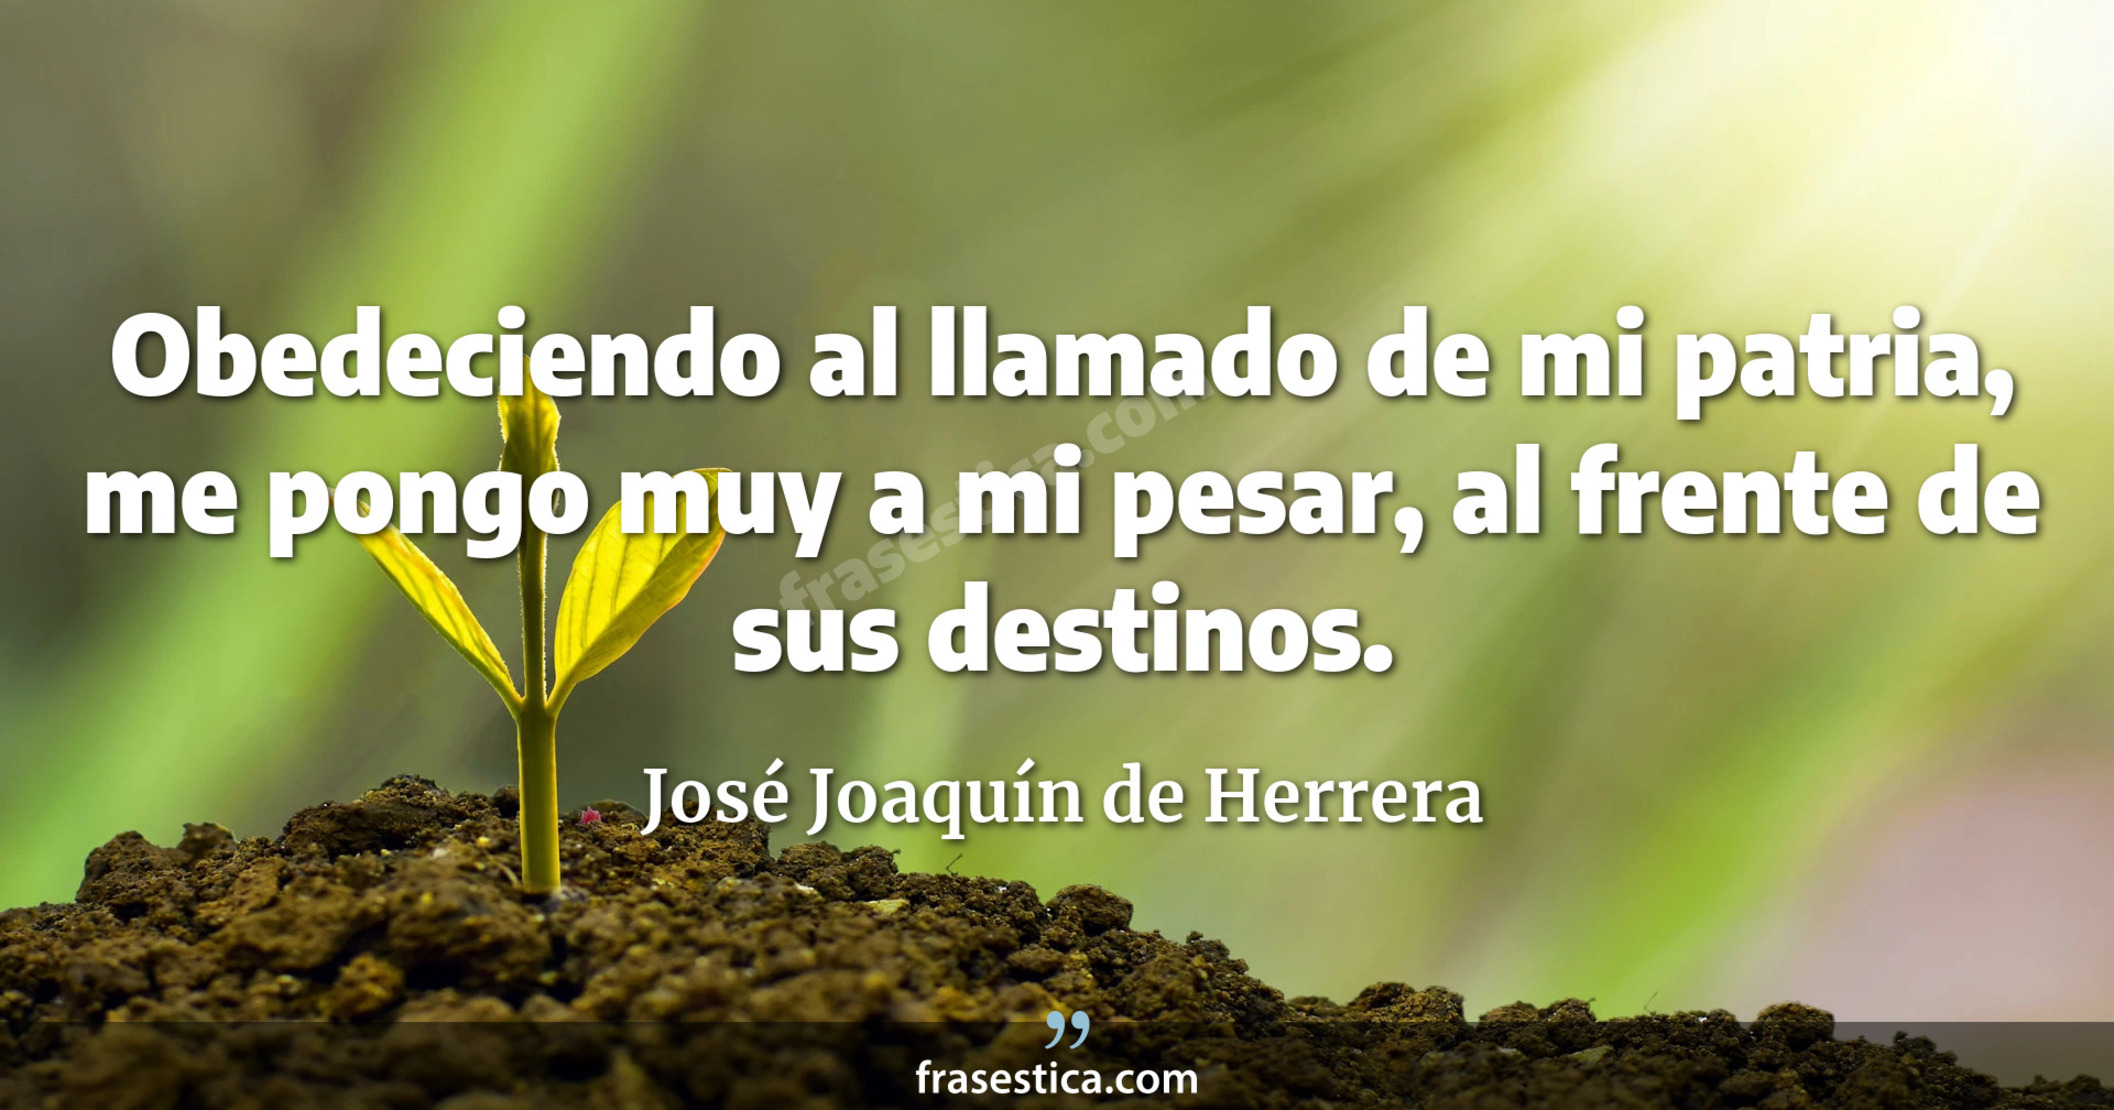 Obedeciendo al llamado de mi patria, me pongo muy a mi pesar, al frente de sus destinos. - José Joaquín de Herrera